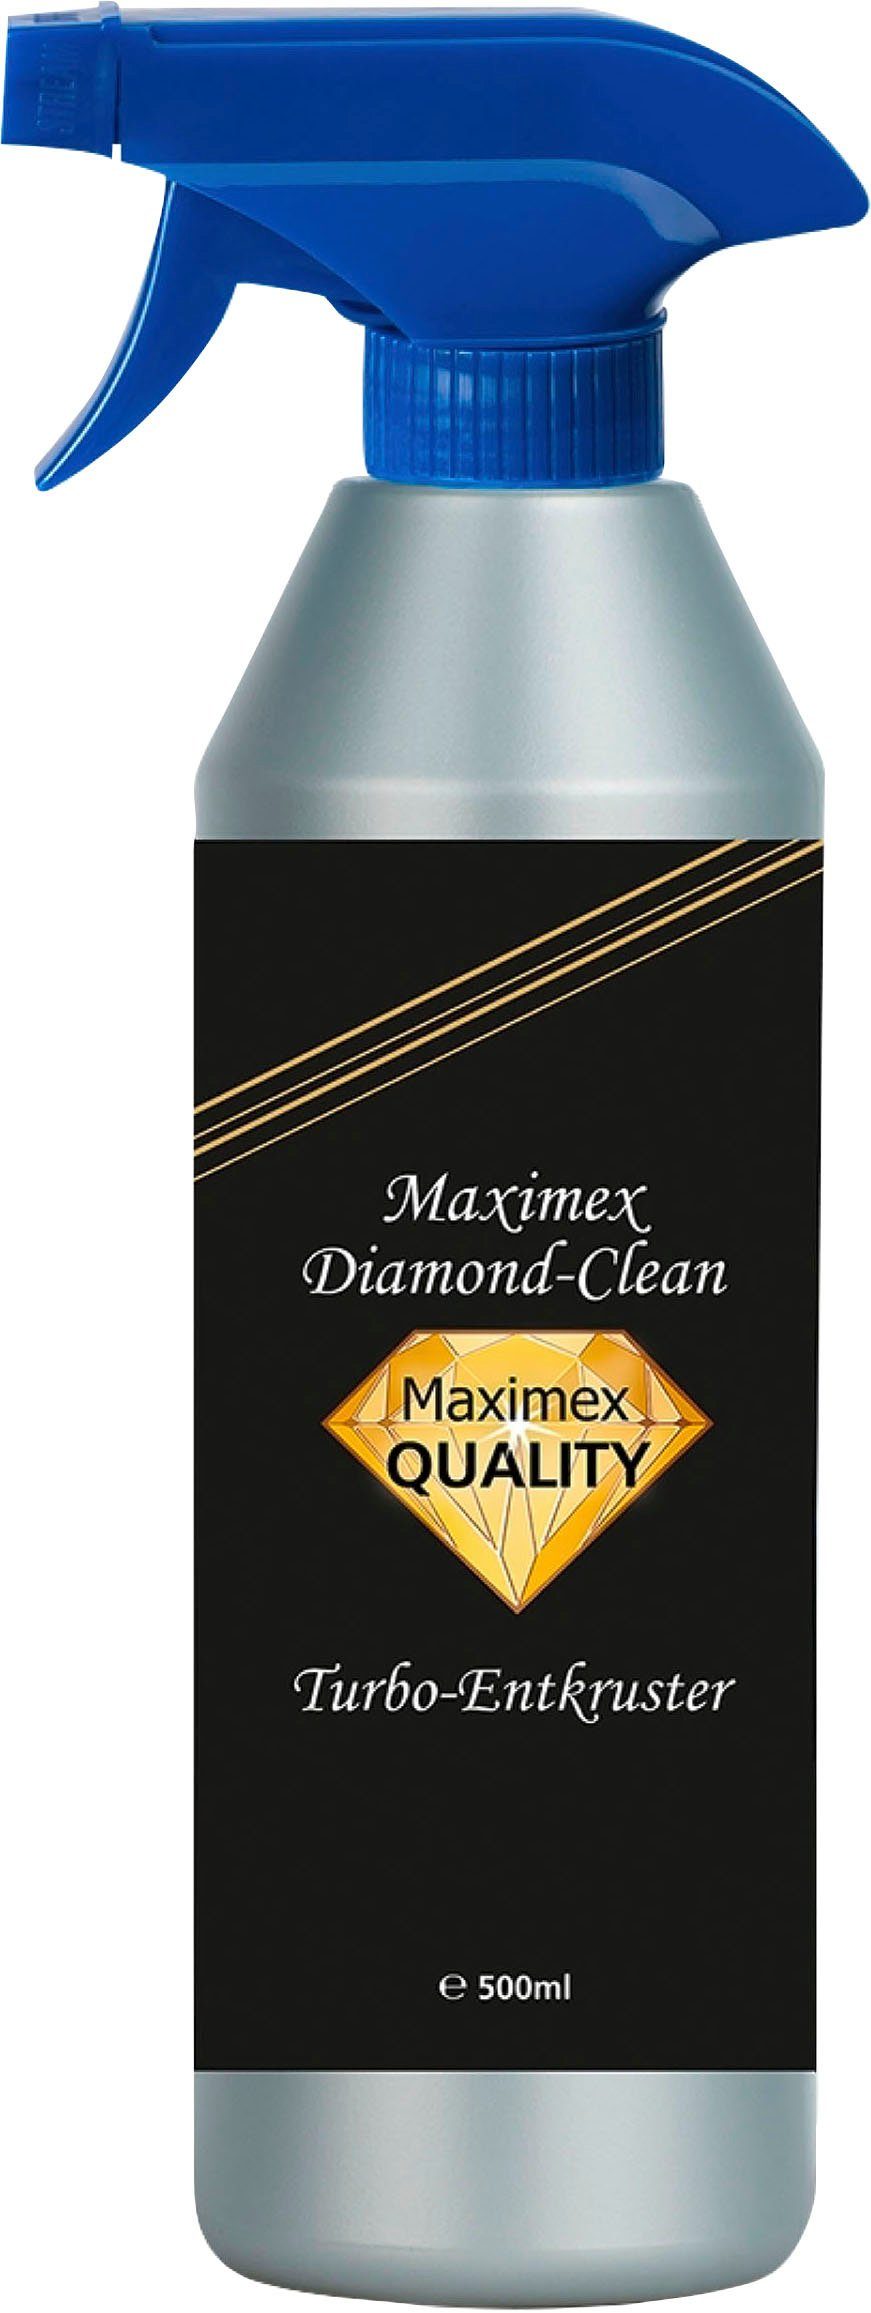 Maximex Diamond Clean Backofenreiniger (effektiver Reiniger gegen Verschmutzungen für Backofen und Grill)